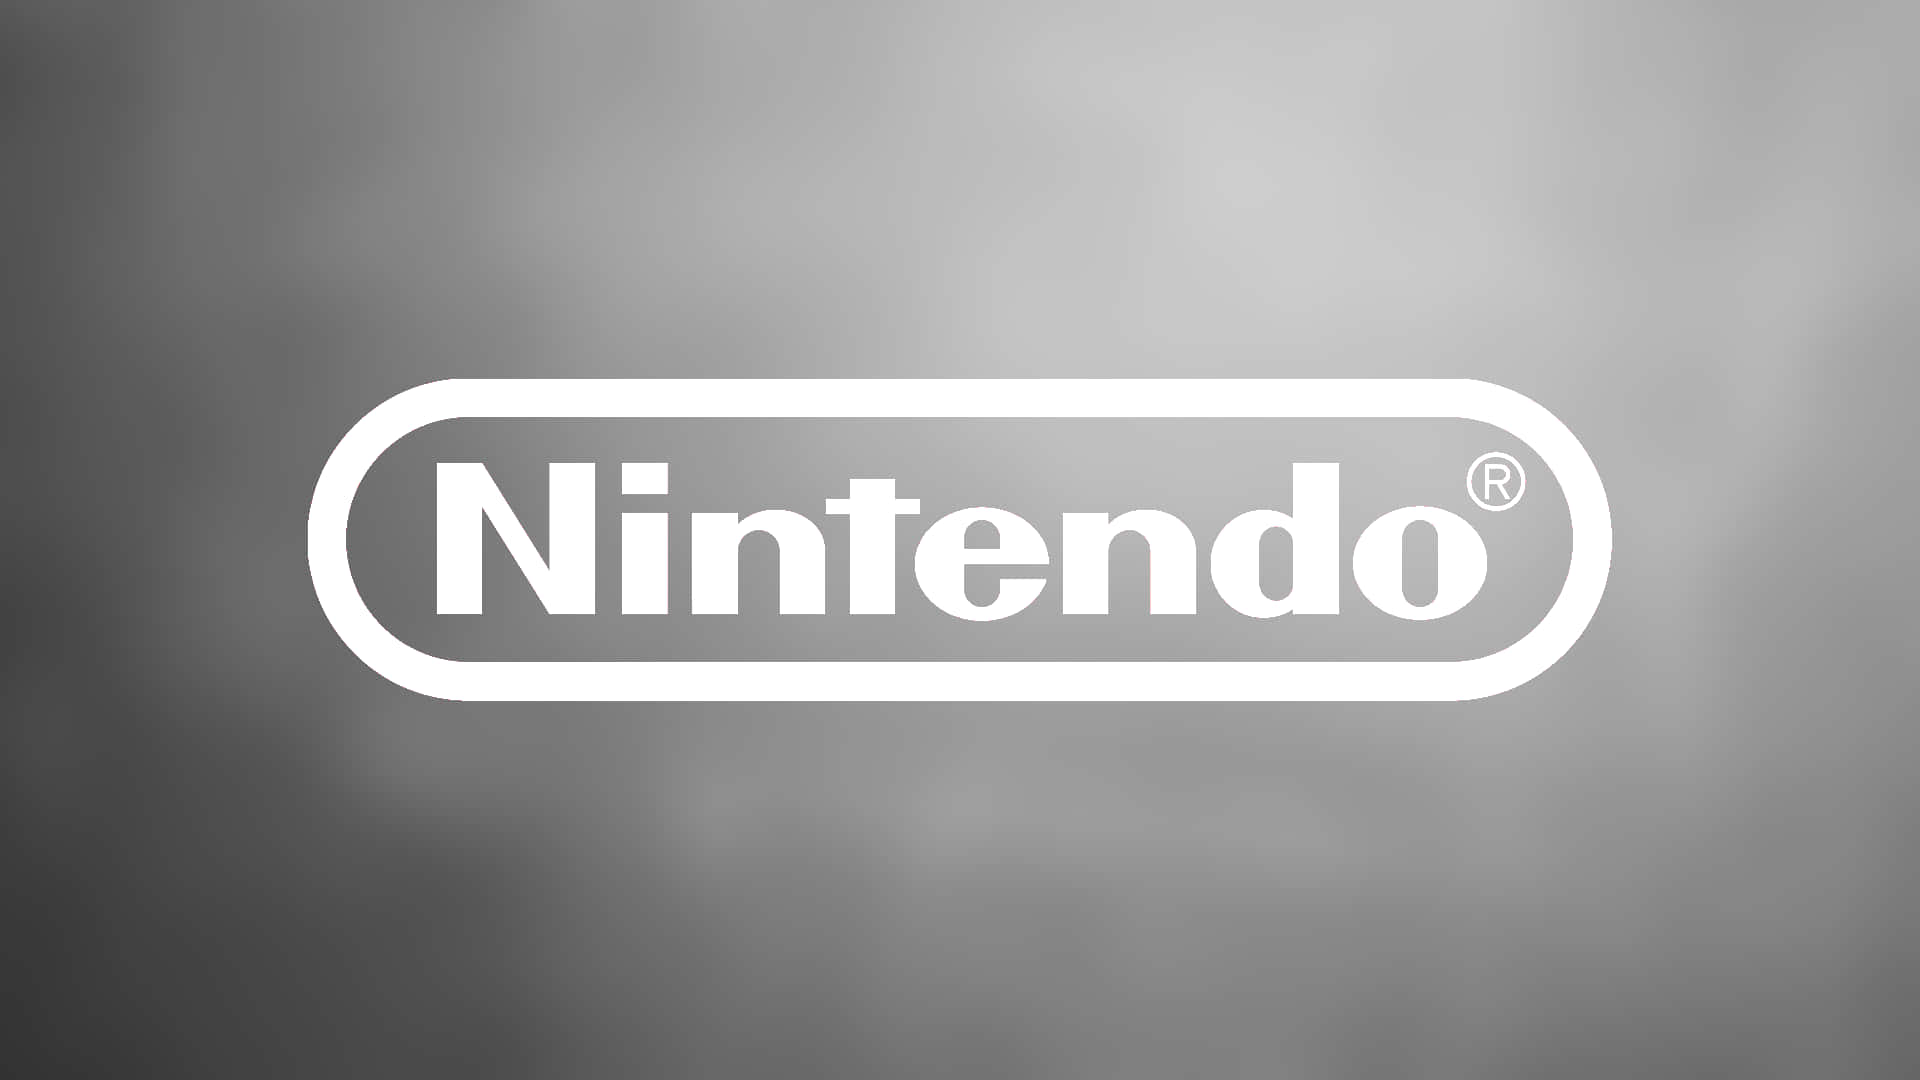 Fåen Klassisk Spiloplevelse Med Nintendo.